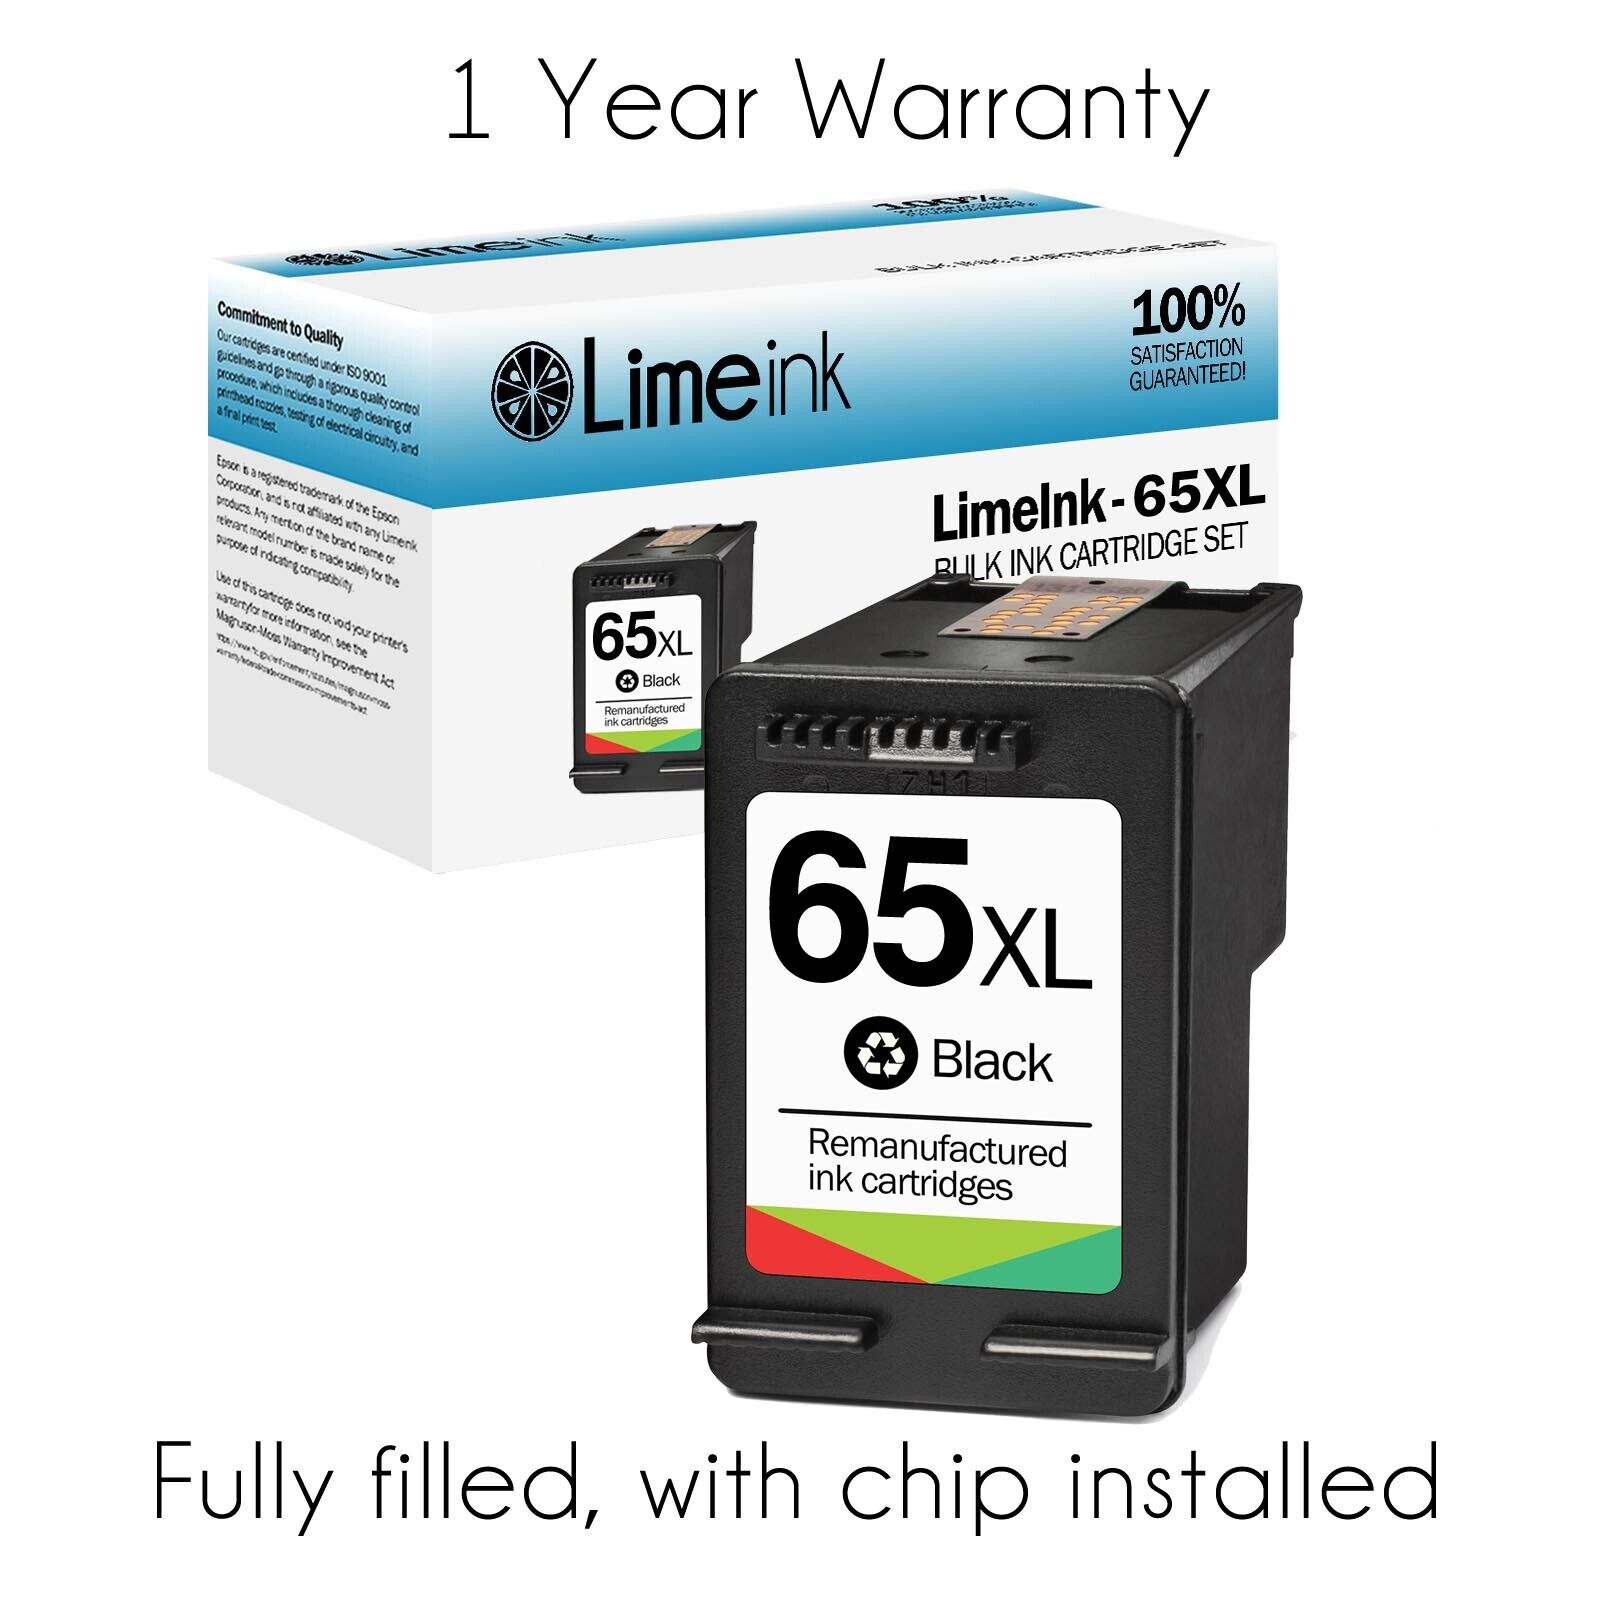 65XL Ink Cartridges for HP Deskjet 2622 2652 3722 3755 ENVY 5000 5052 3721 3730